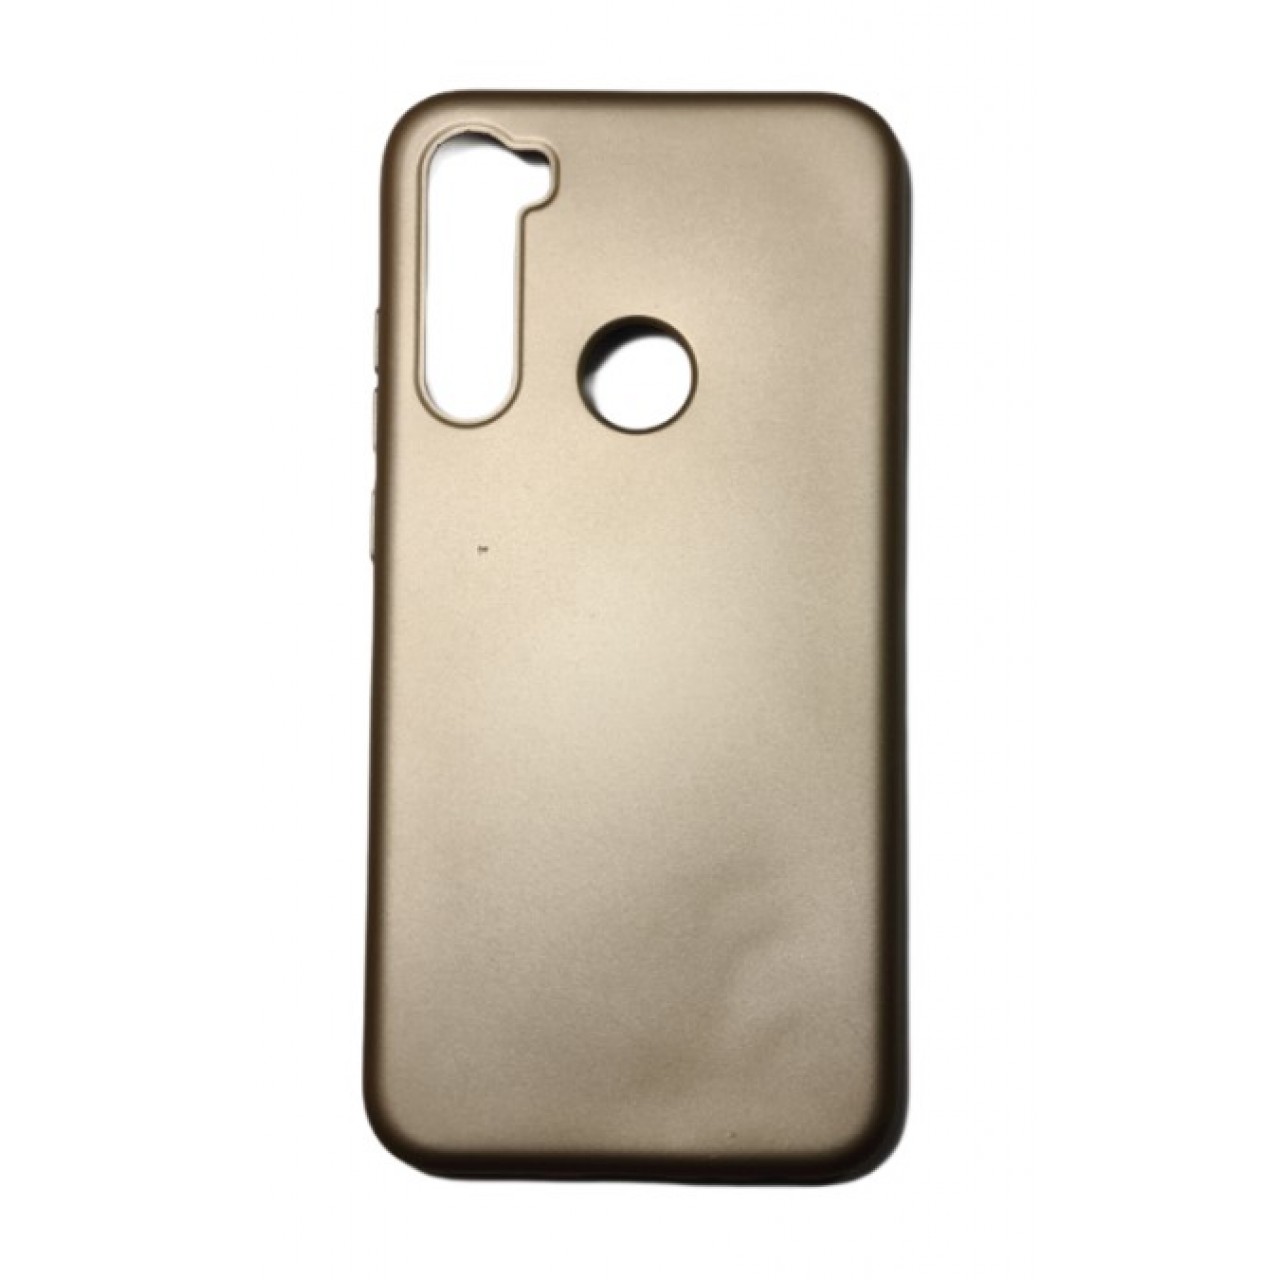 Θήκη Xiaomi Note 8 Silicone soft-touch cover - 5110 - Χρυσό - ΟΕΜ